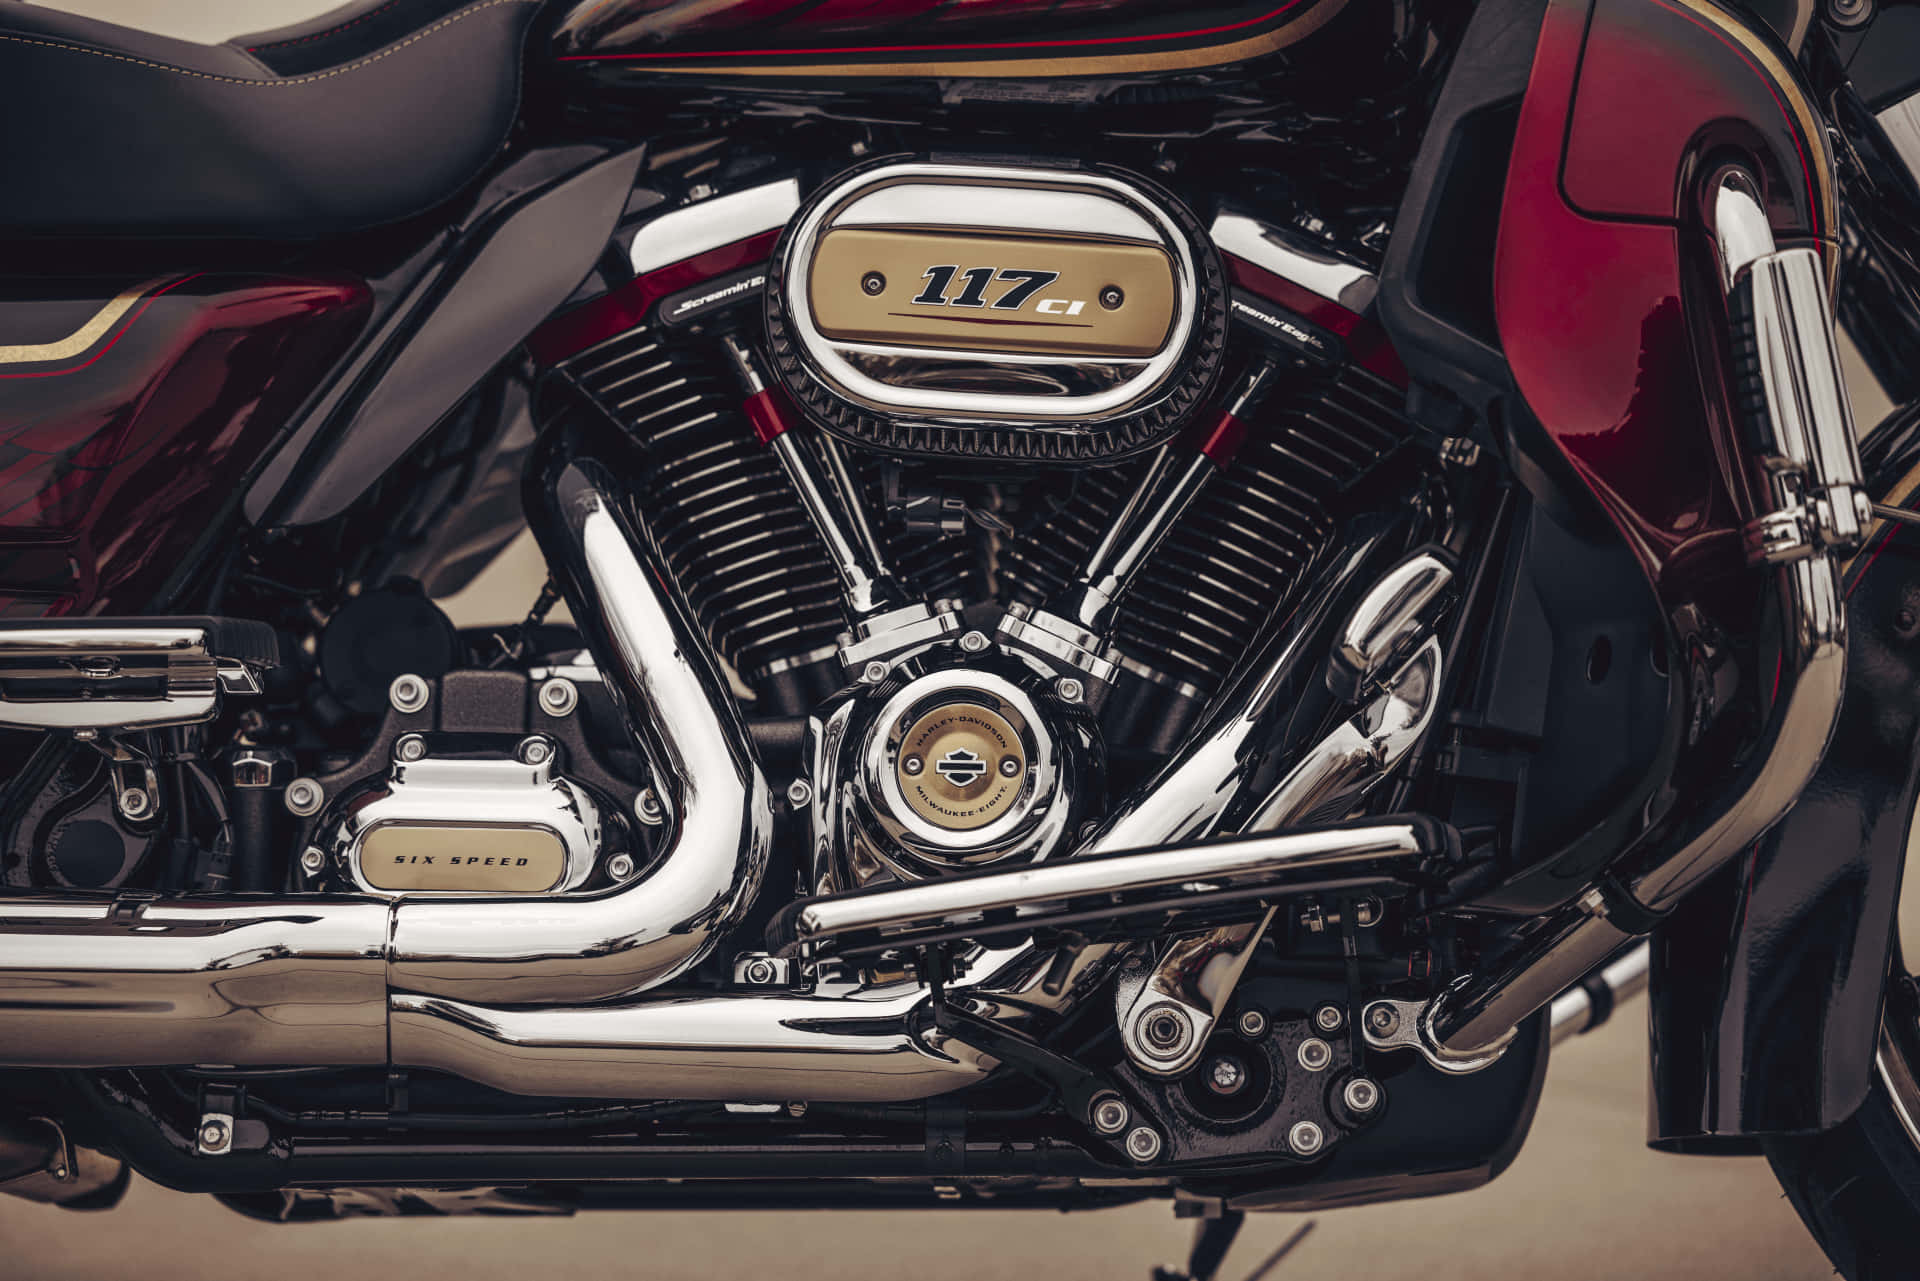 Maßgefertigte,flammenförmige Harley Davidson, Parkt Auf Der Straße.